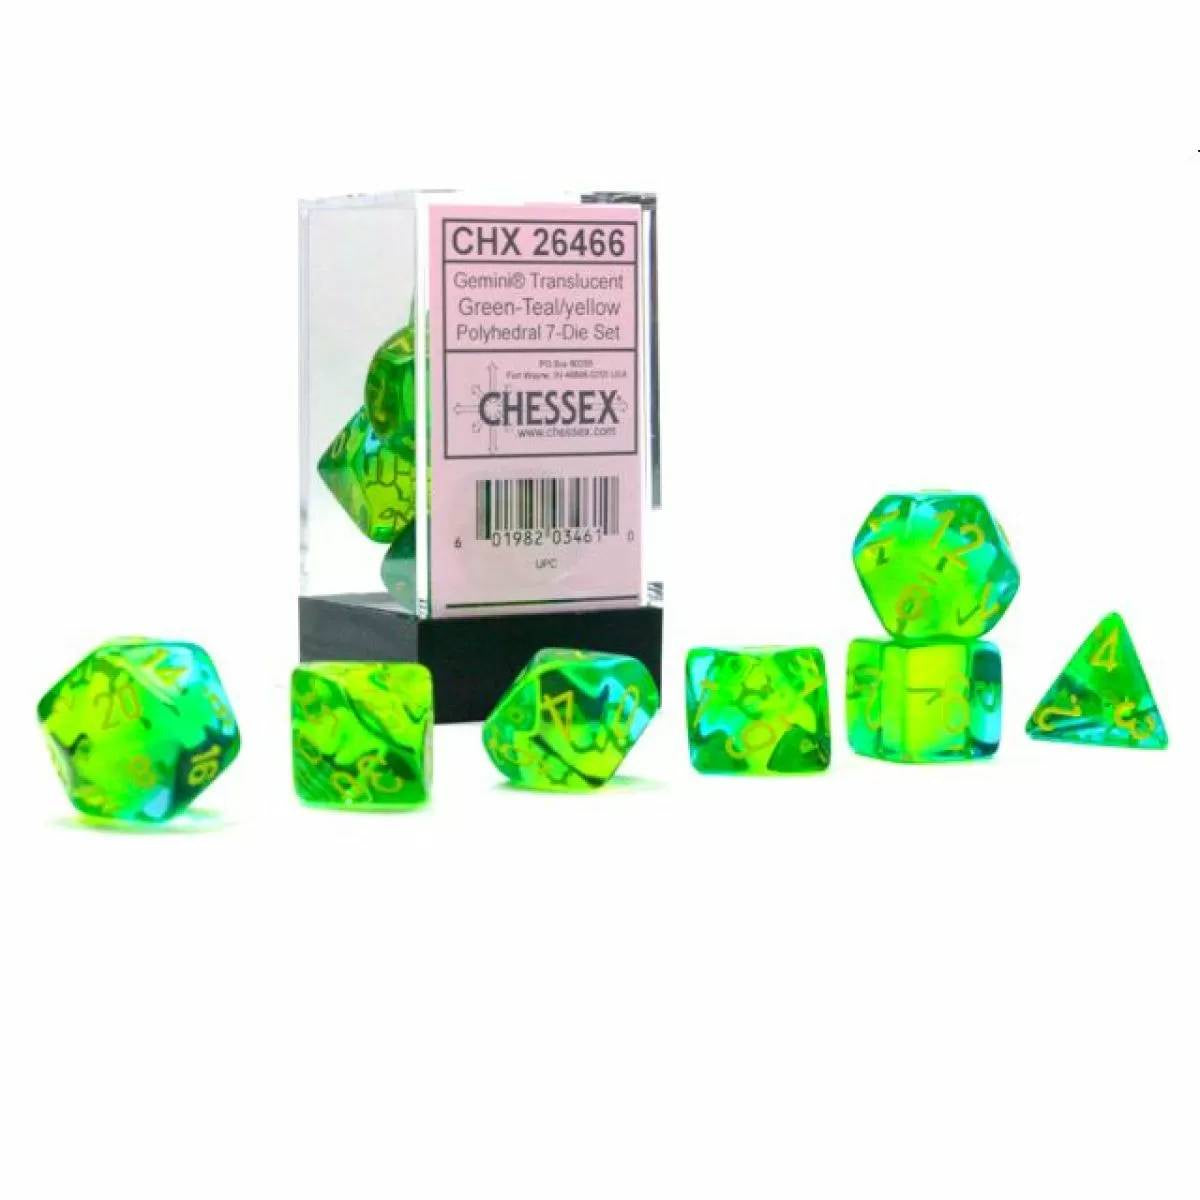 Chessex - Gemini Translucent Green-Teal/Yellow Luminary 7-Die Set CHX 26466